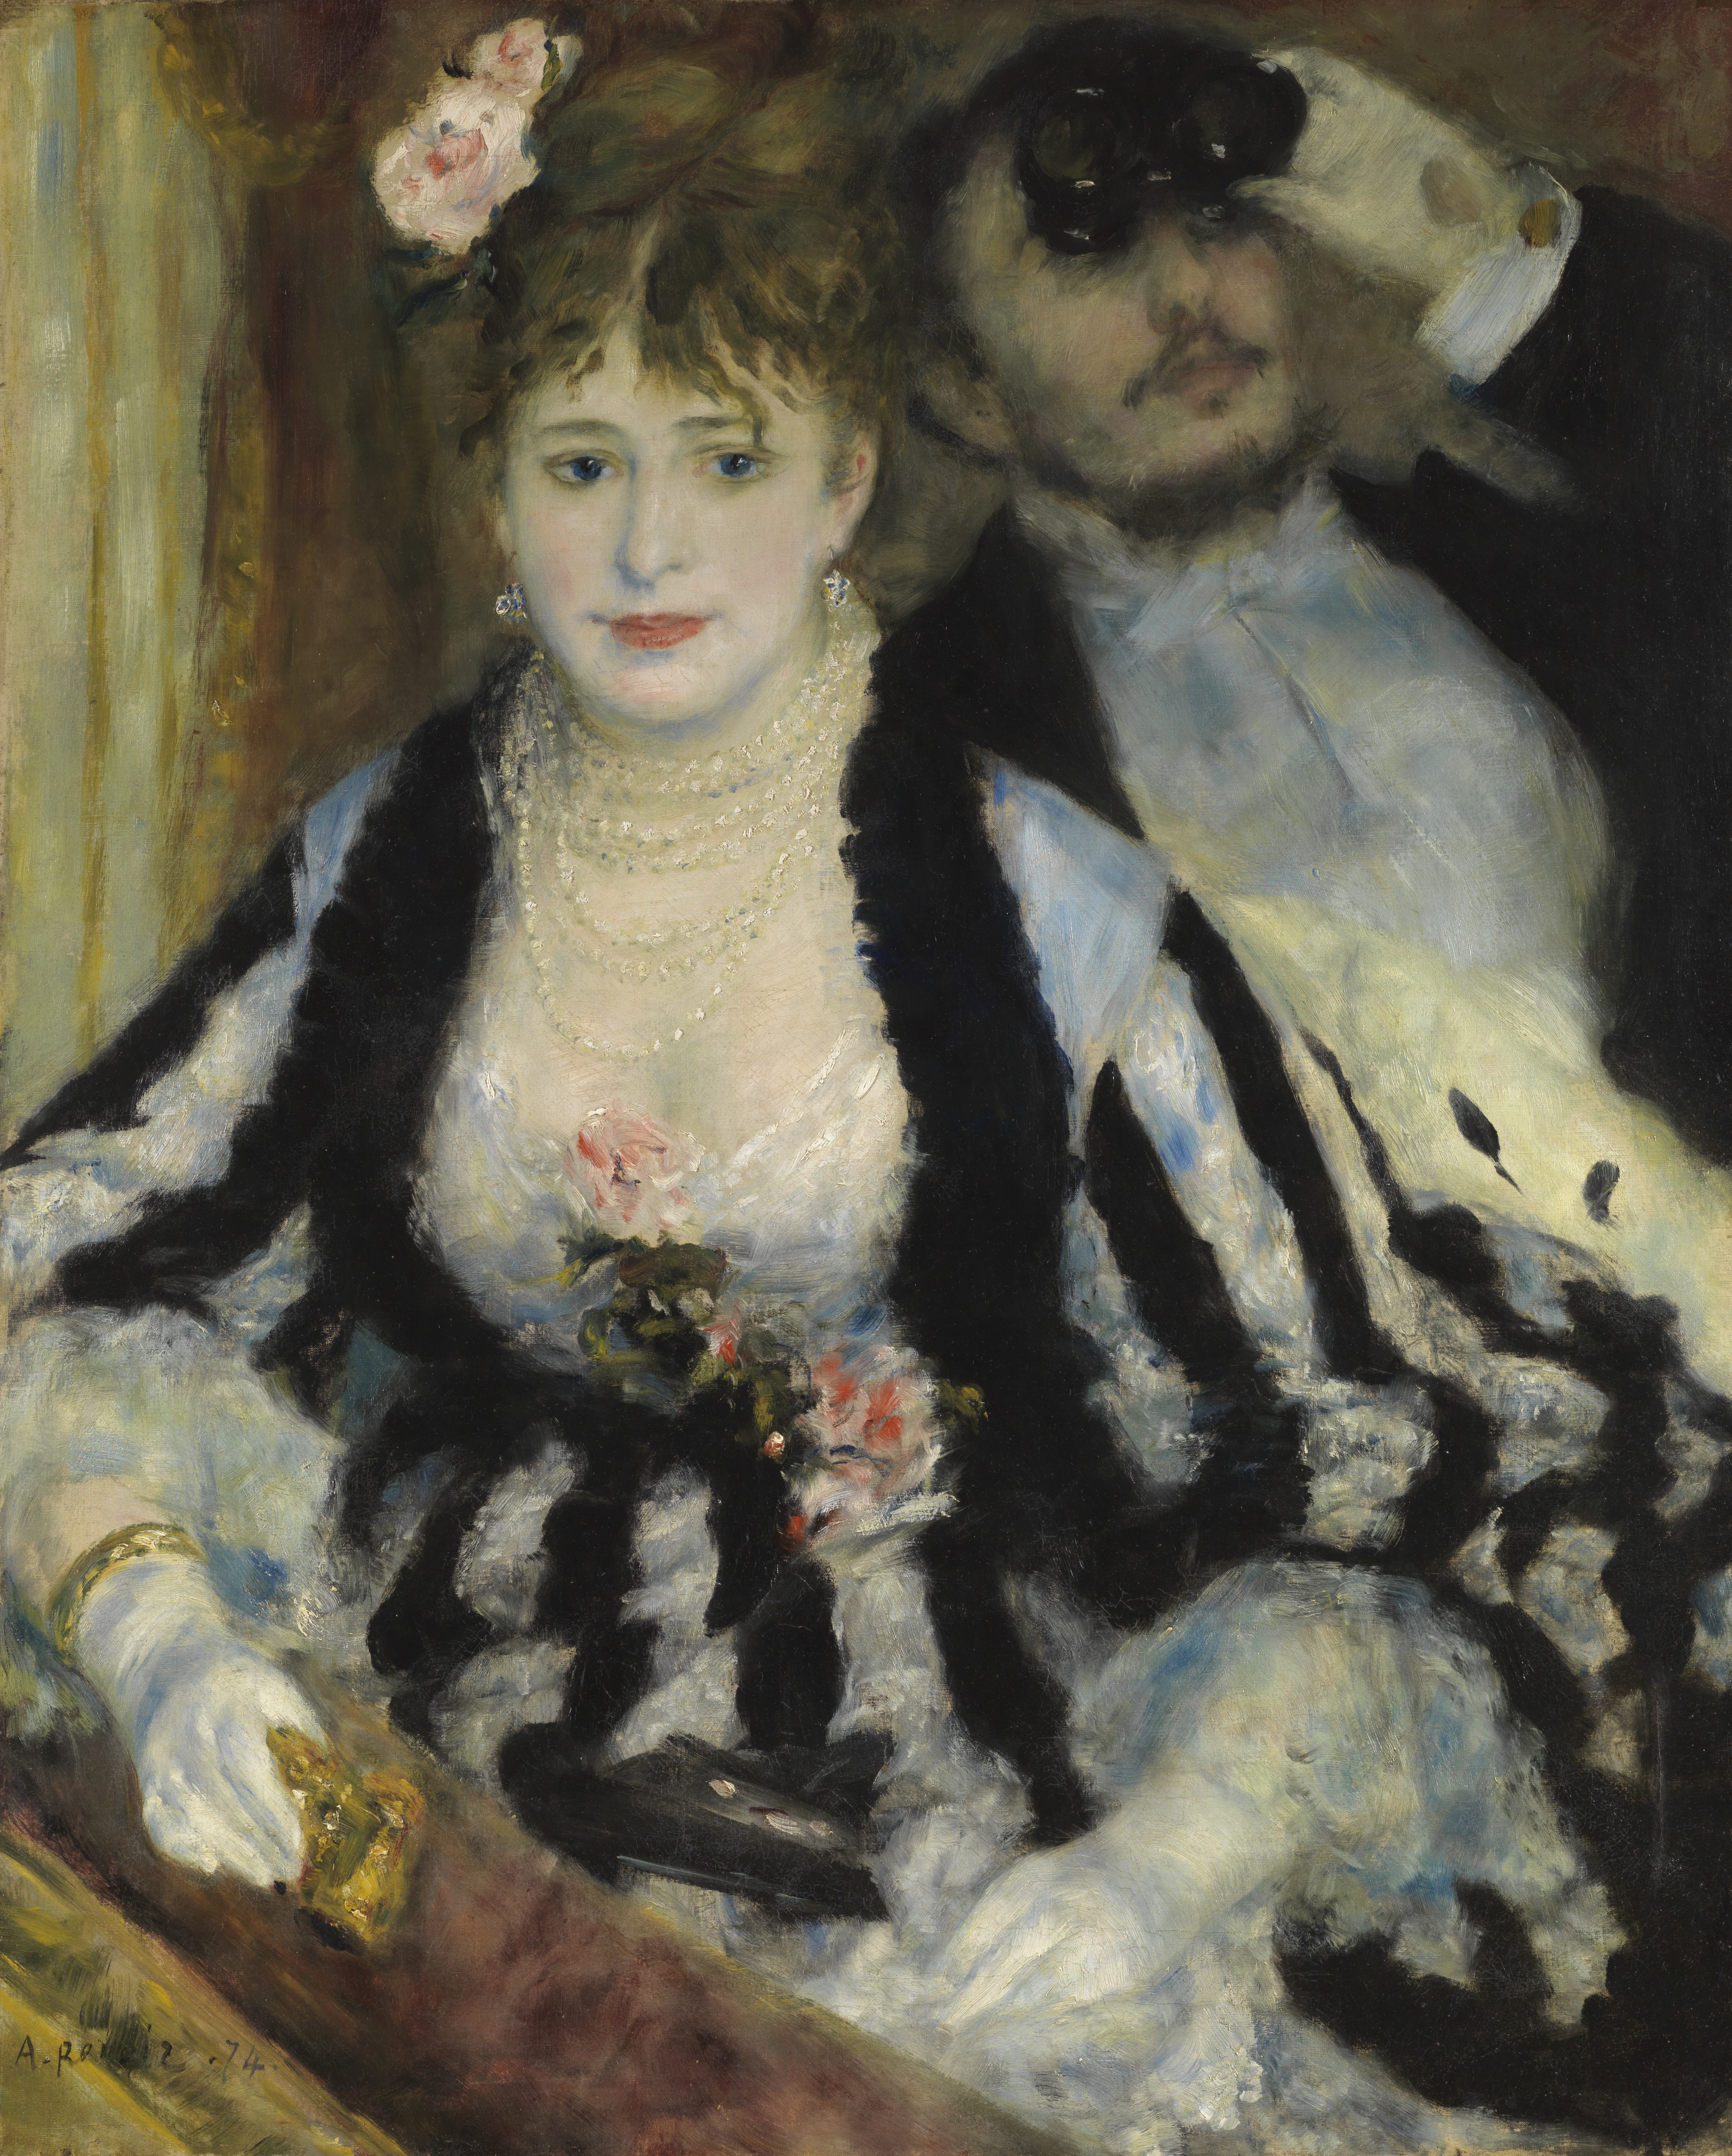 Auguste Renoir n'était pas un privilégié mais un ouvrier de la peinture : le décryptage du tableau La Loge par Isabelle Schmitz